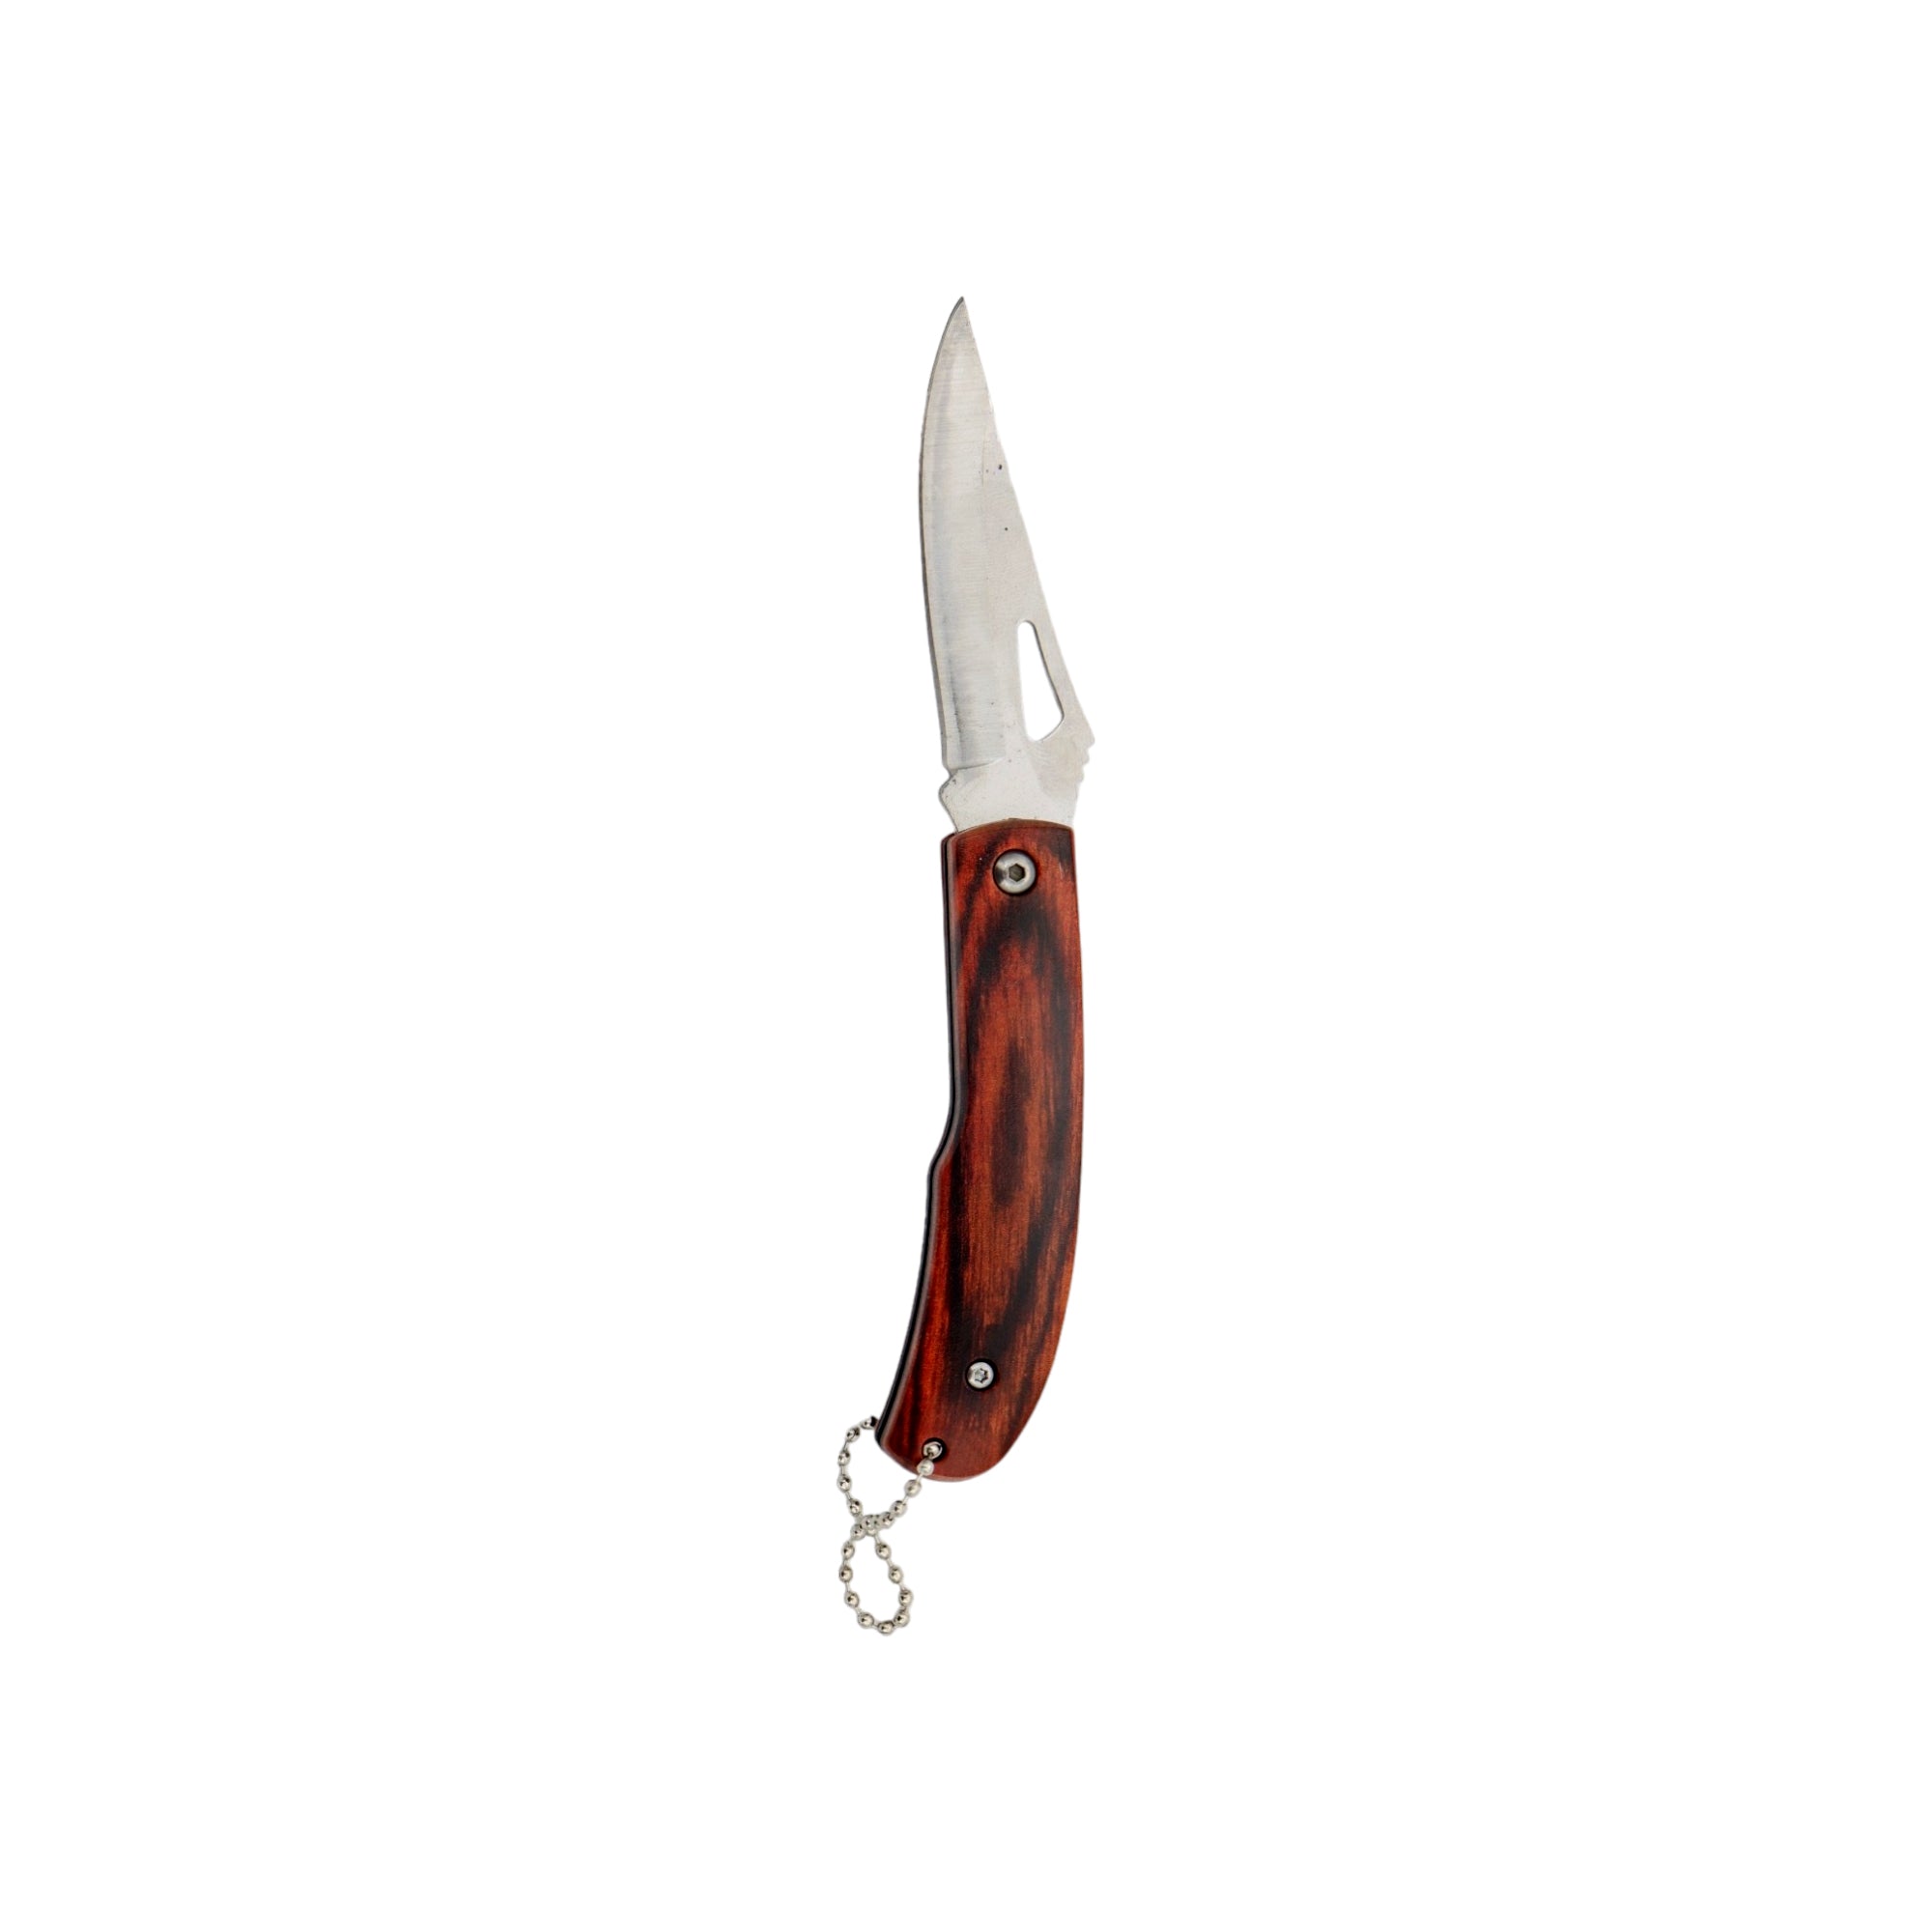 Pocket Knives 1cm Wooden Handle